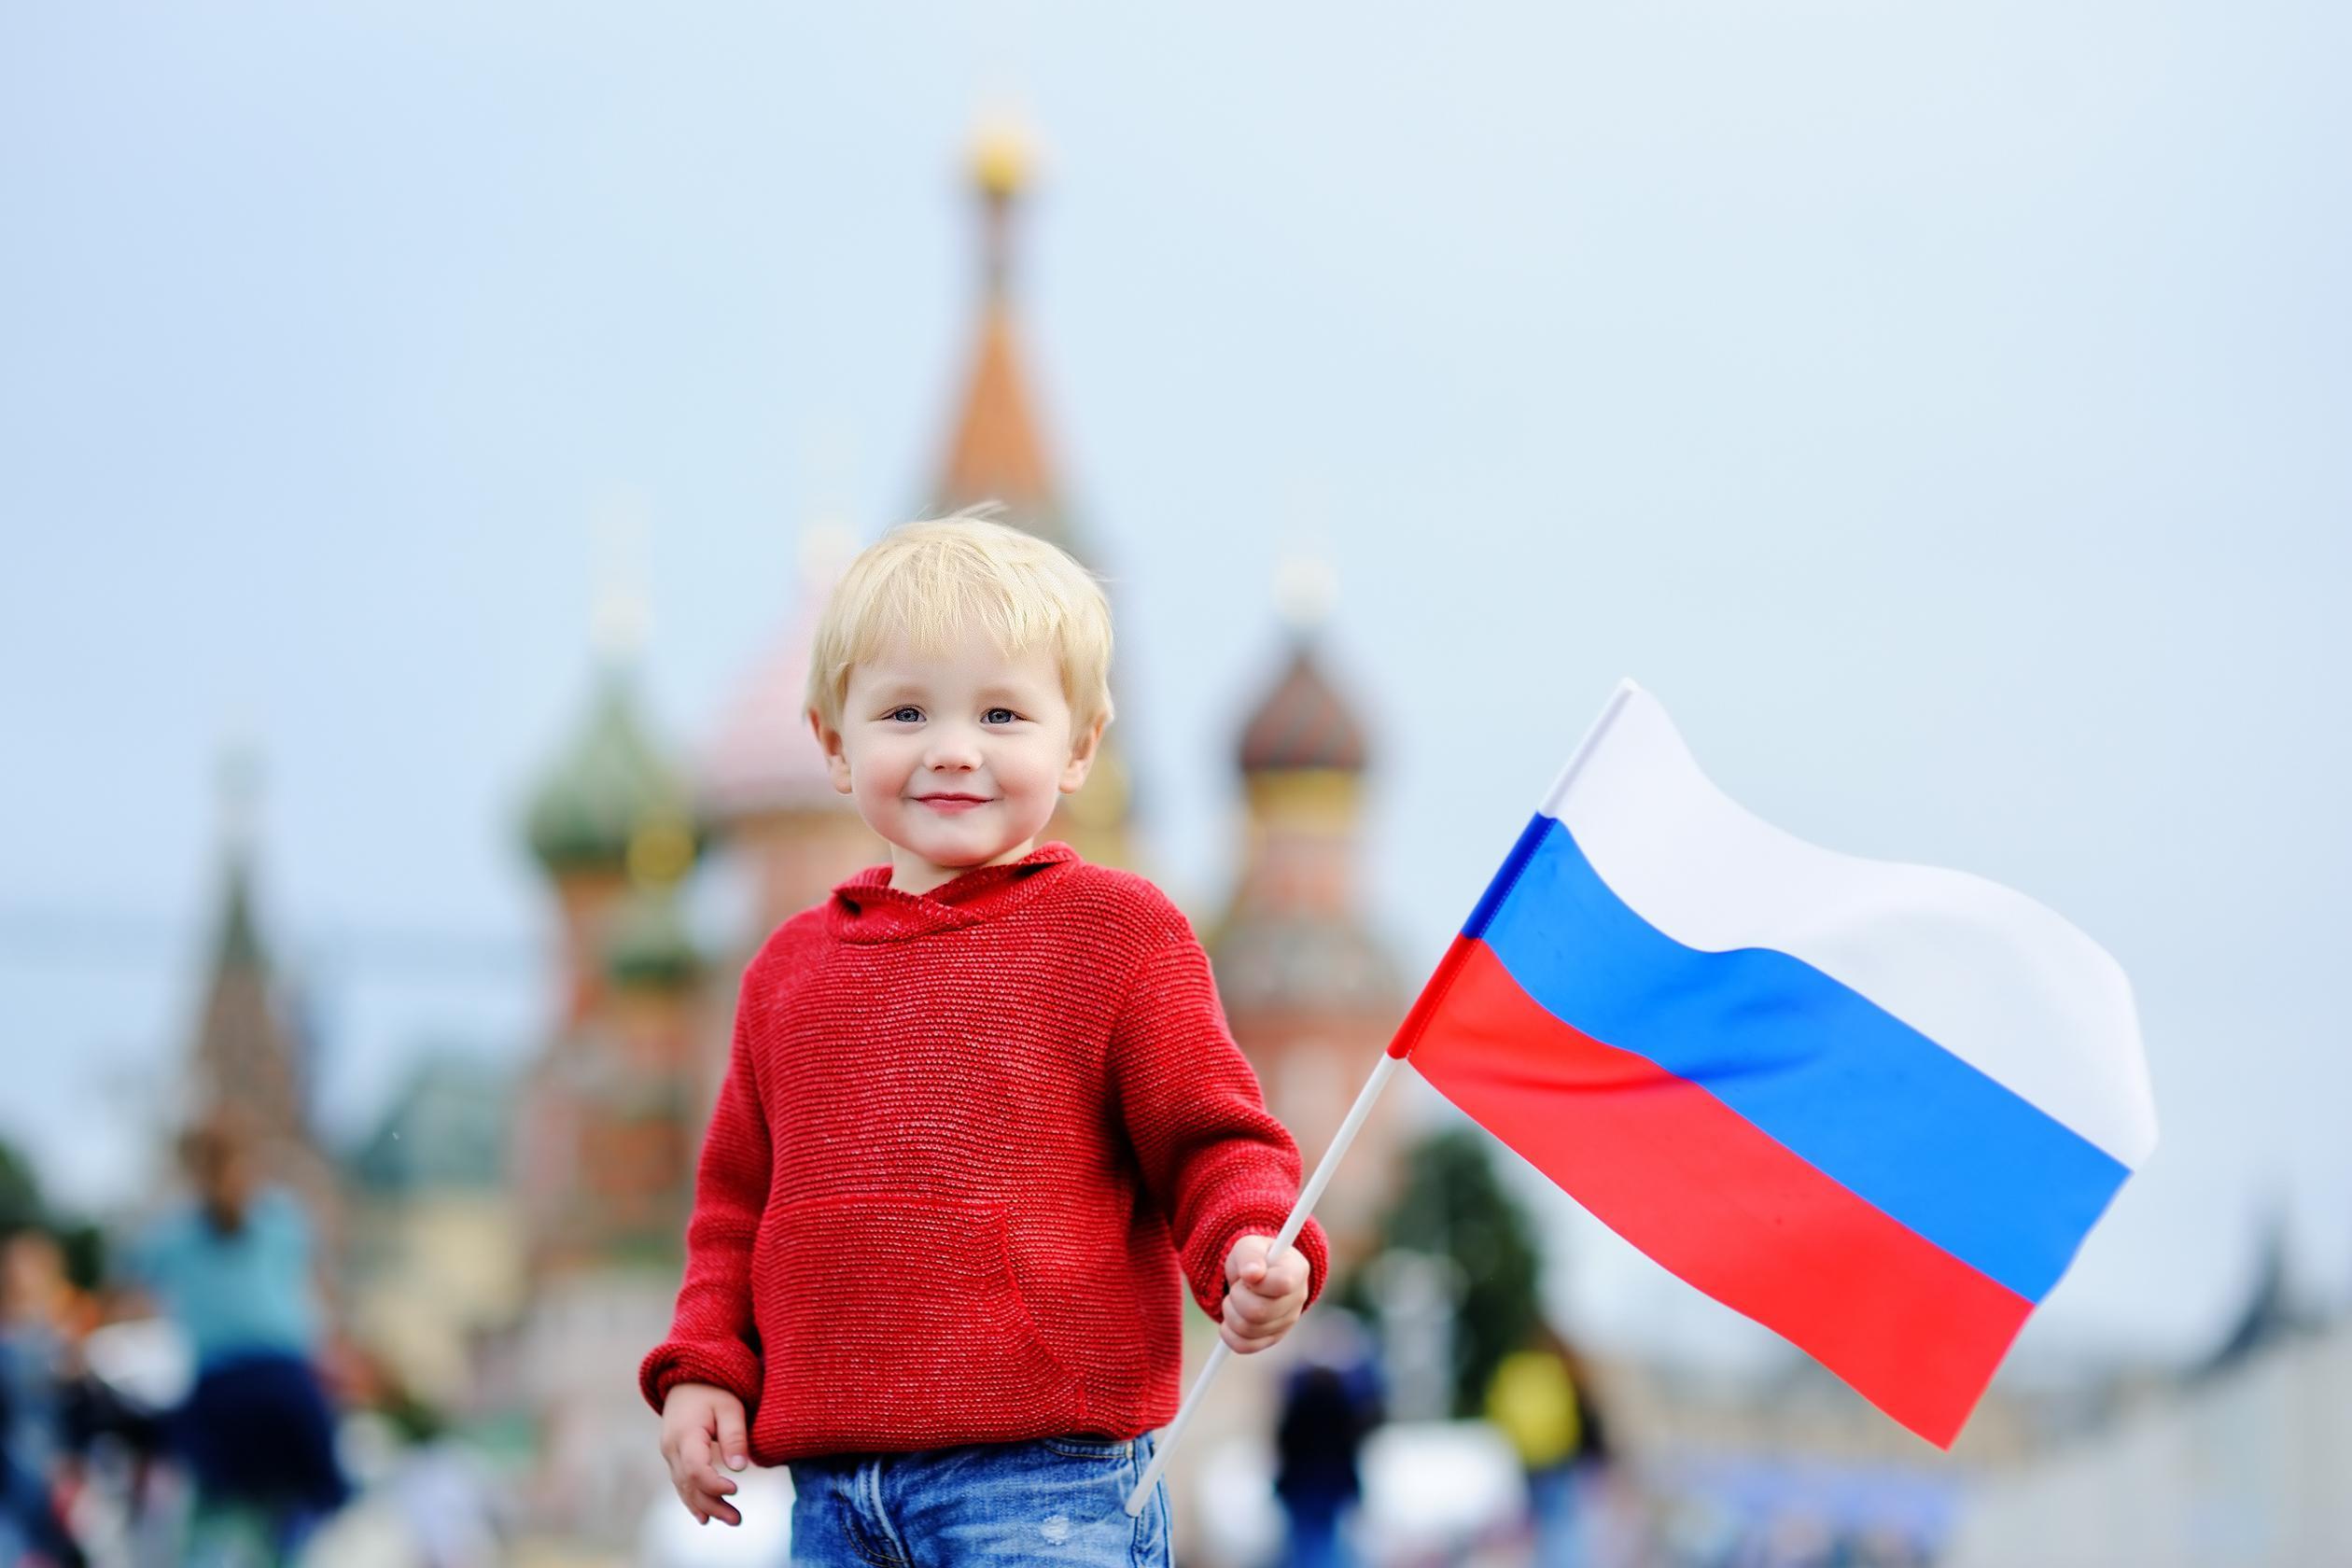 Какие события вызвали у Россиян гордость за последние 10 лет